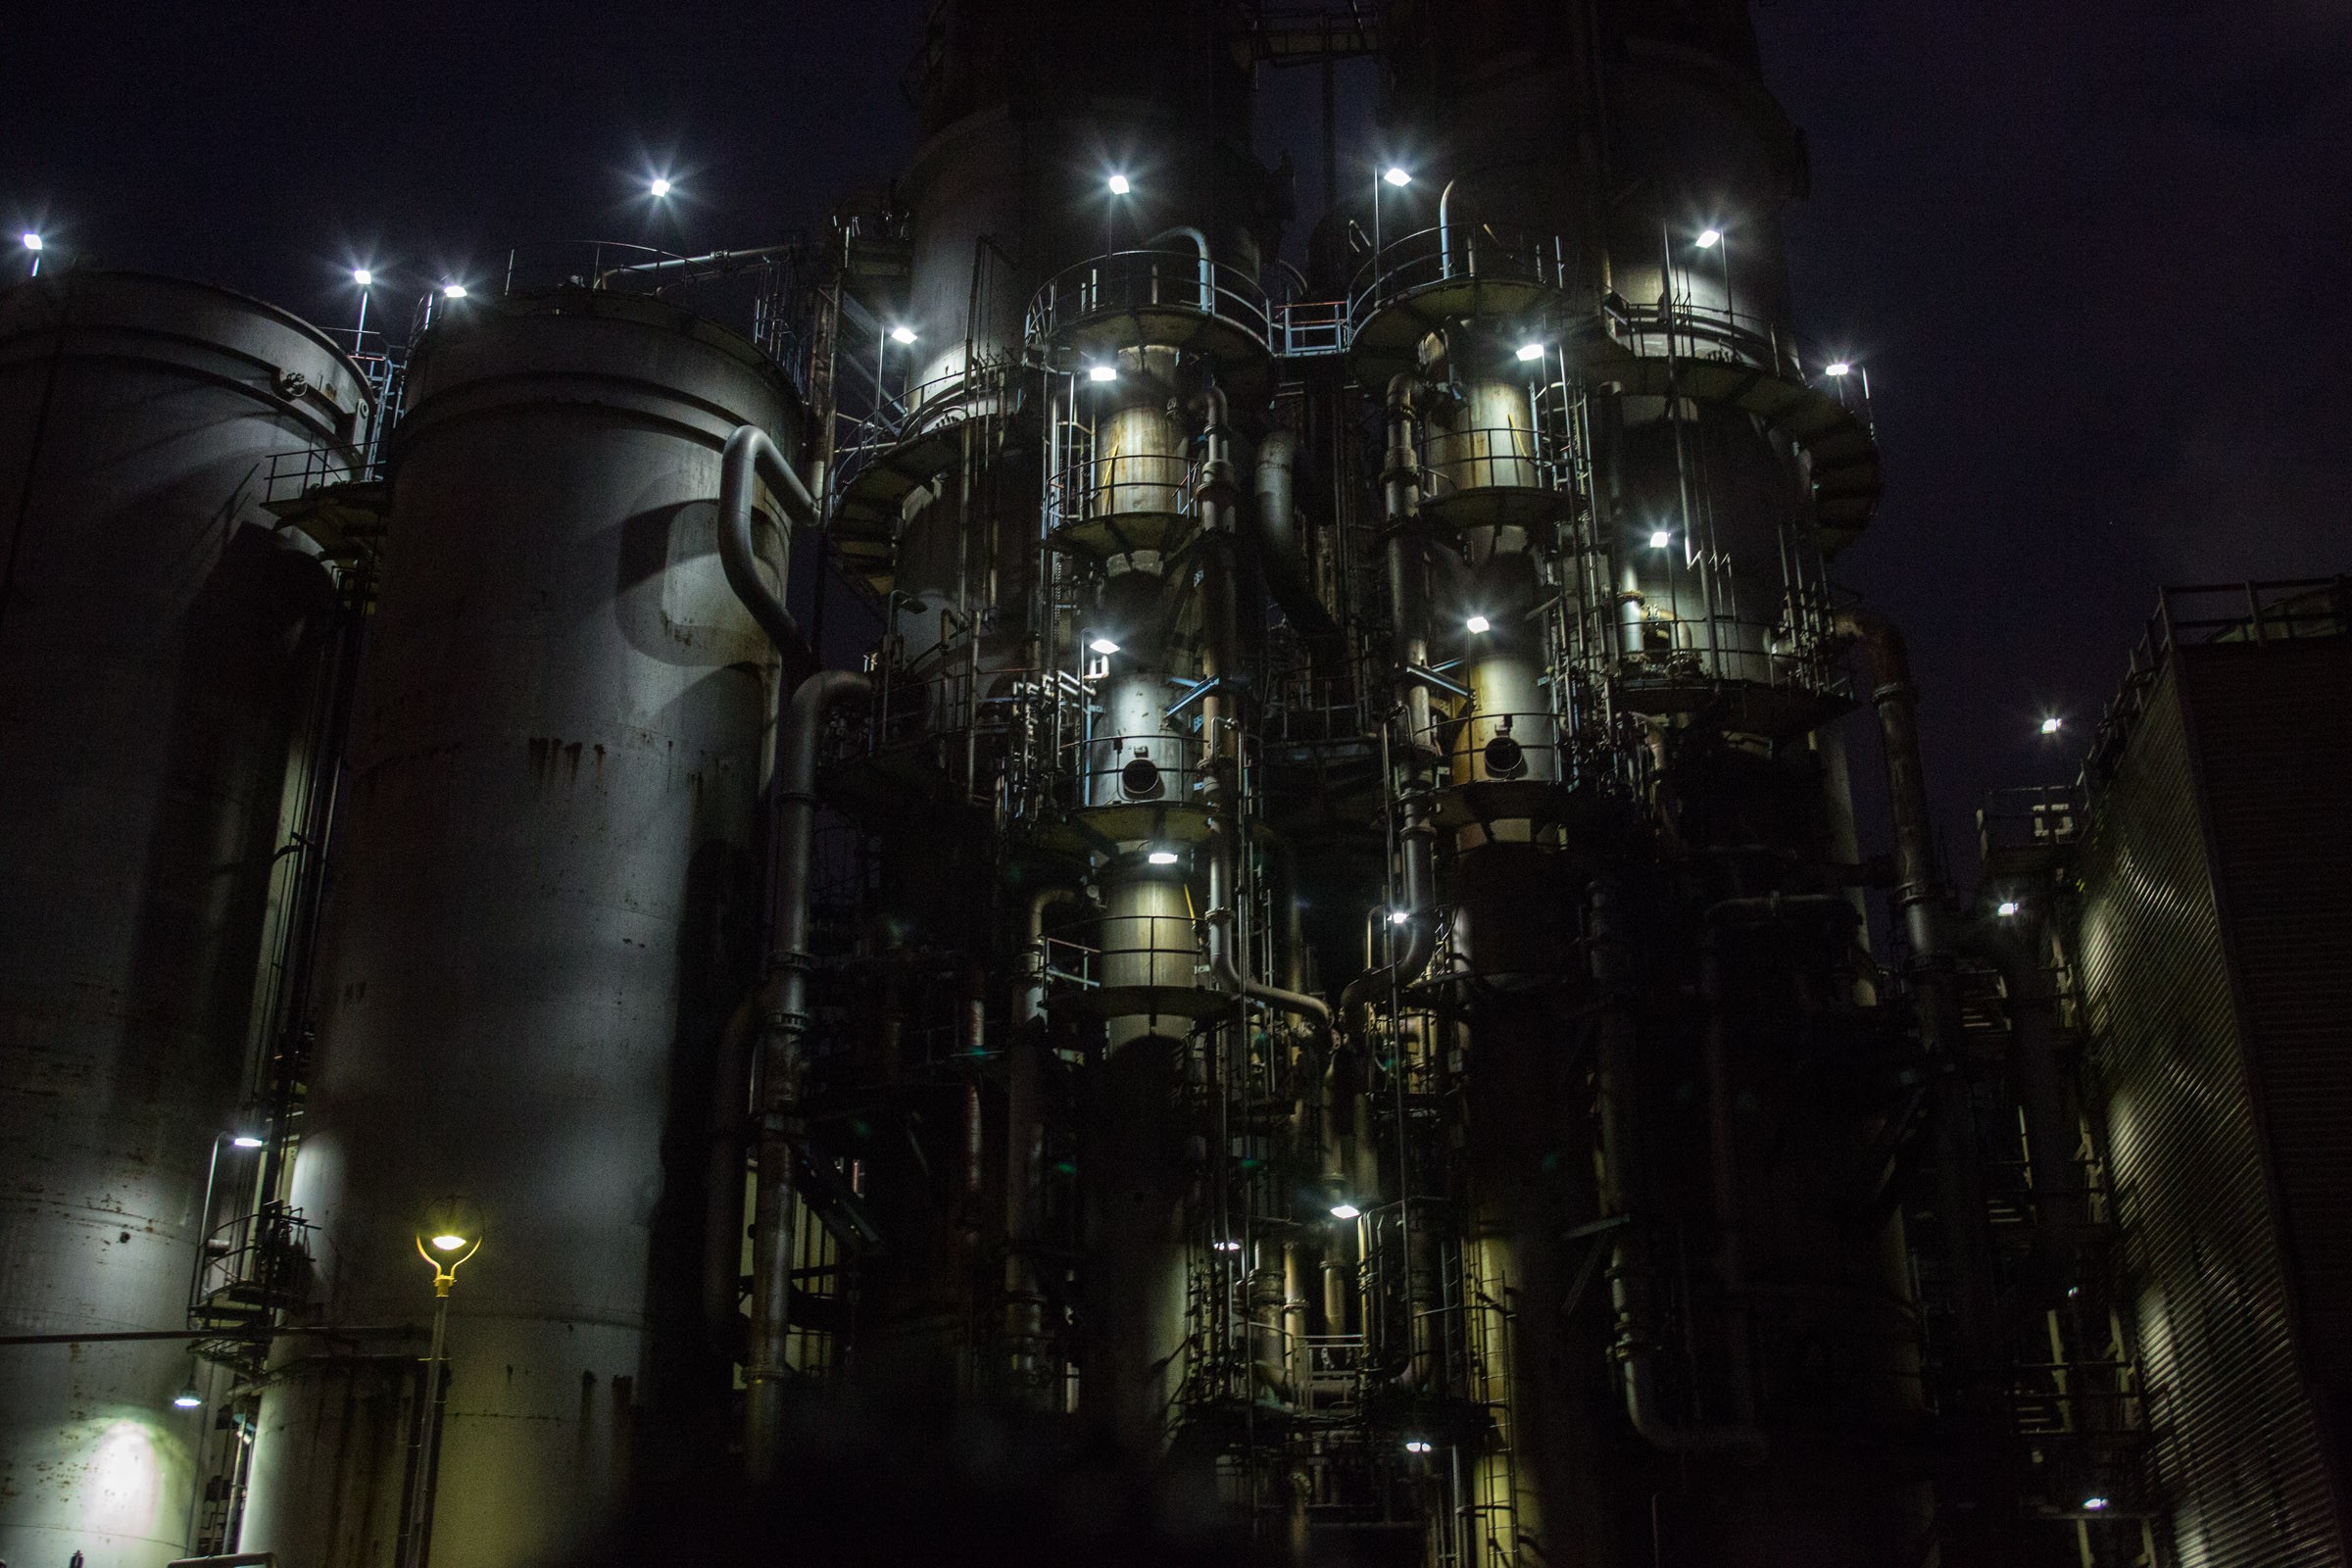 異世界感たっぷり クルーズ船から見た水江運河の工場夜景 フリー写真有 イメージガレージ